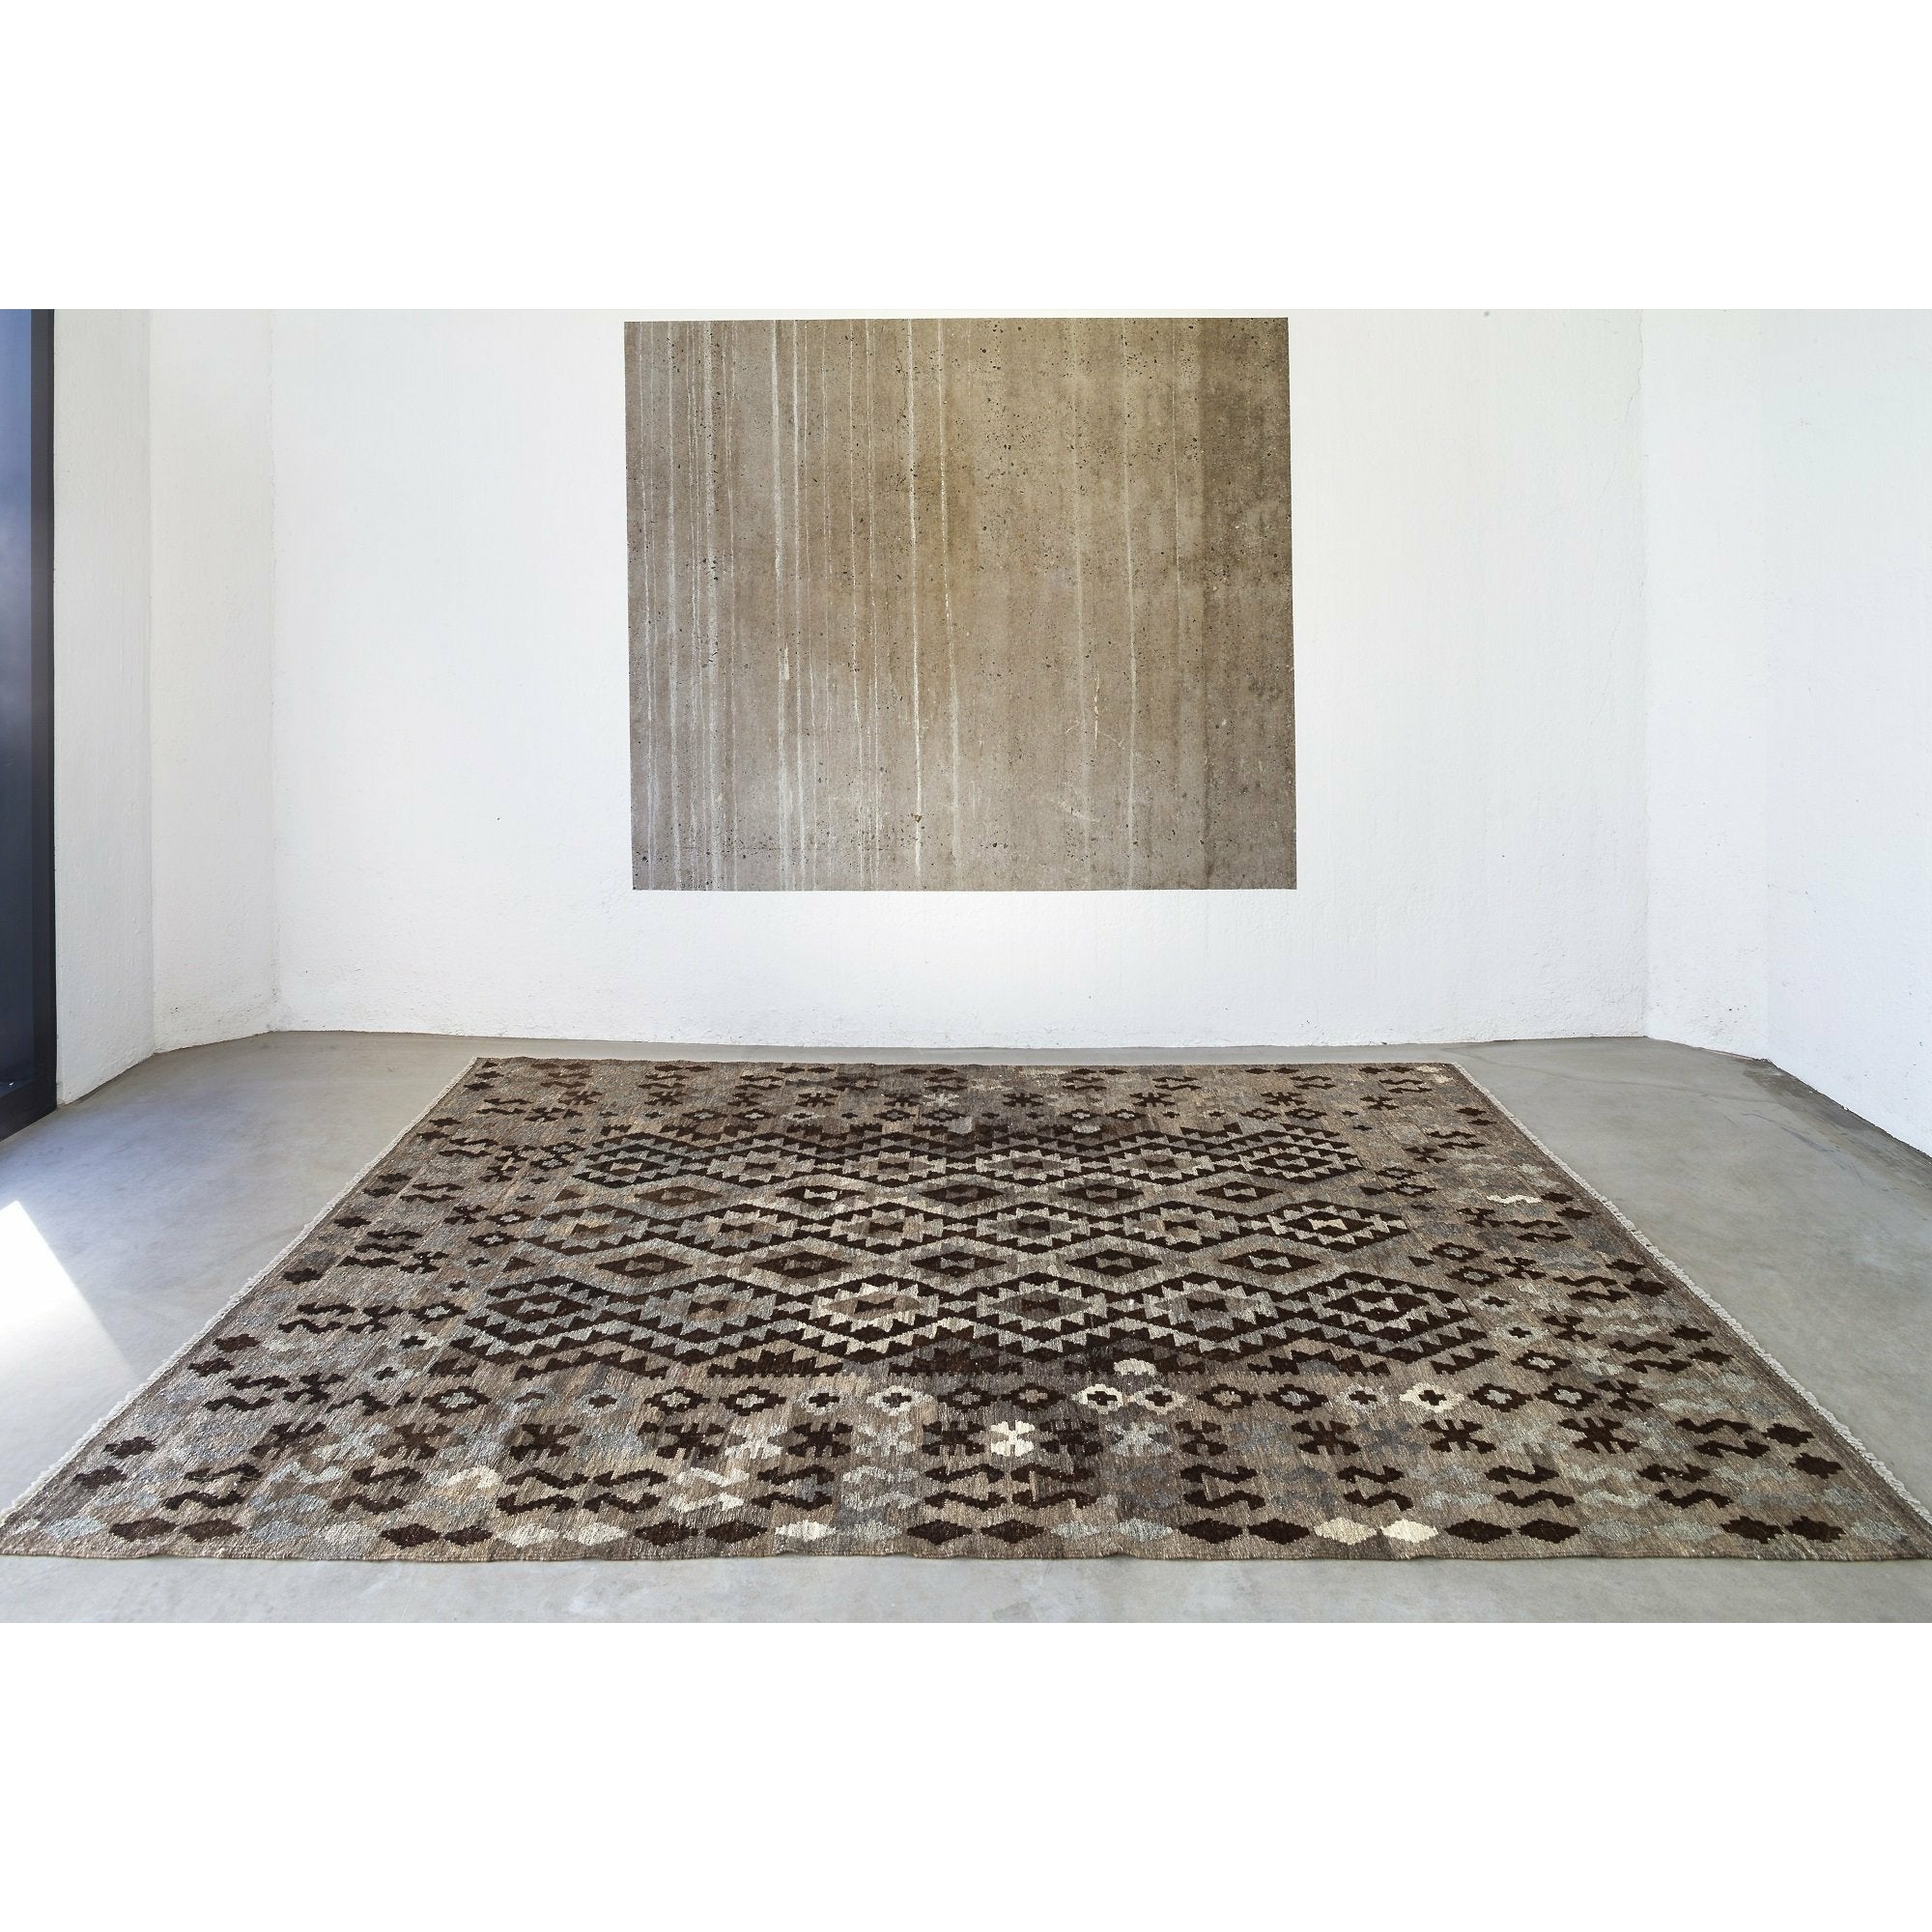 Massimo Kelim Rug Luonnollinen tummanharmaa/ruskea/musta, 200x300 cm